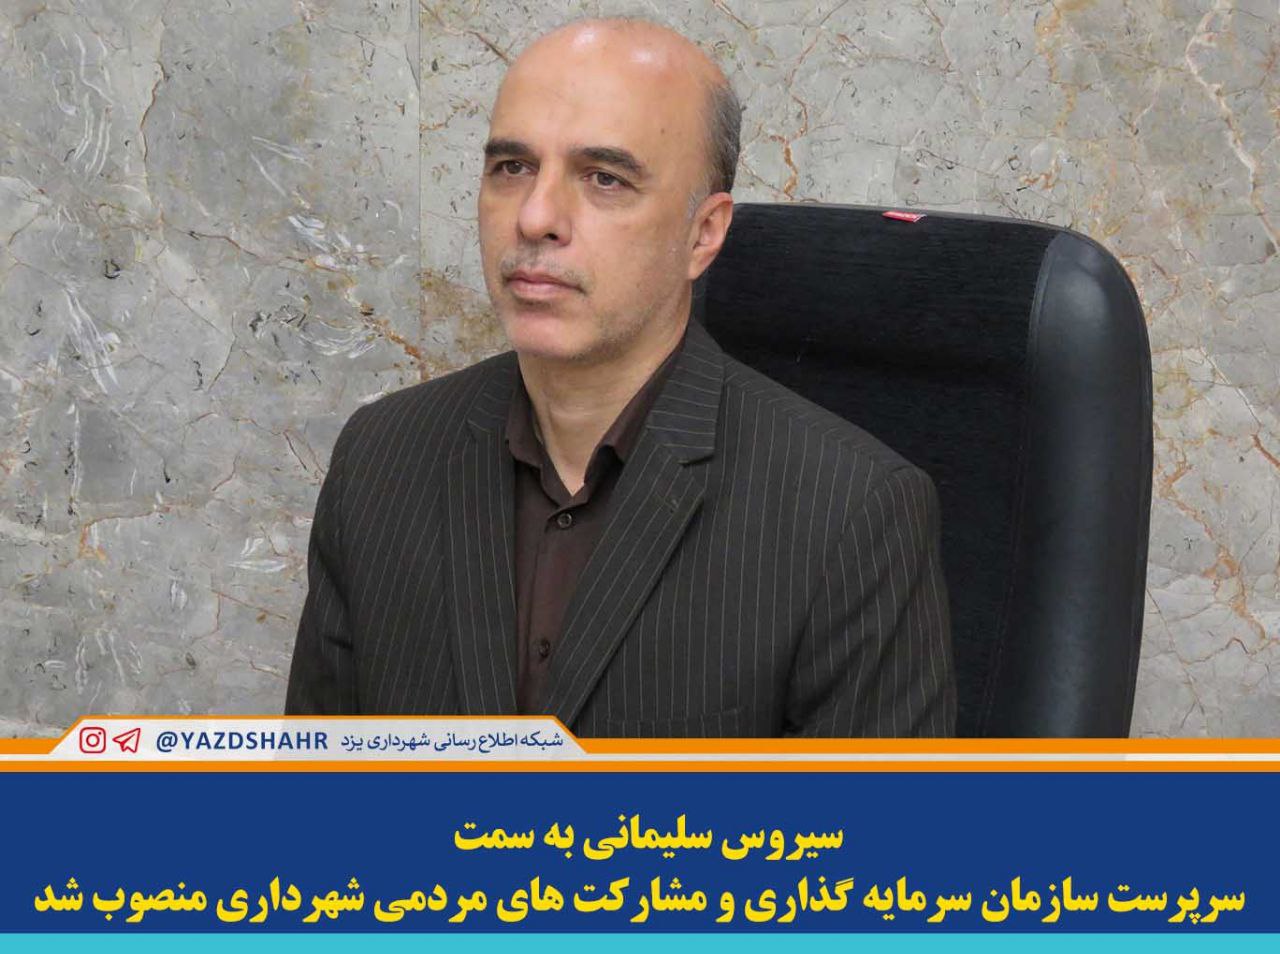 سیروس سلیمانی به عنوان سرپرست سازمان سرمایه گذاری و مشارکت های مردمی شهرداری یزد منصوب شد